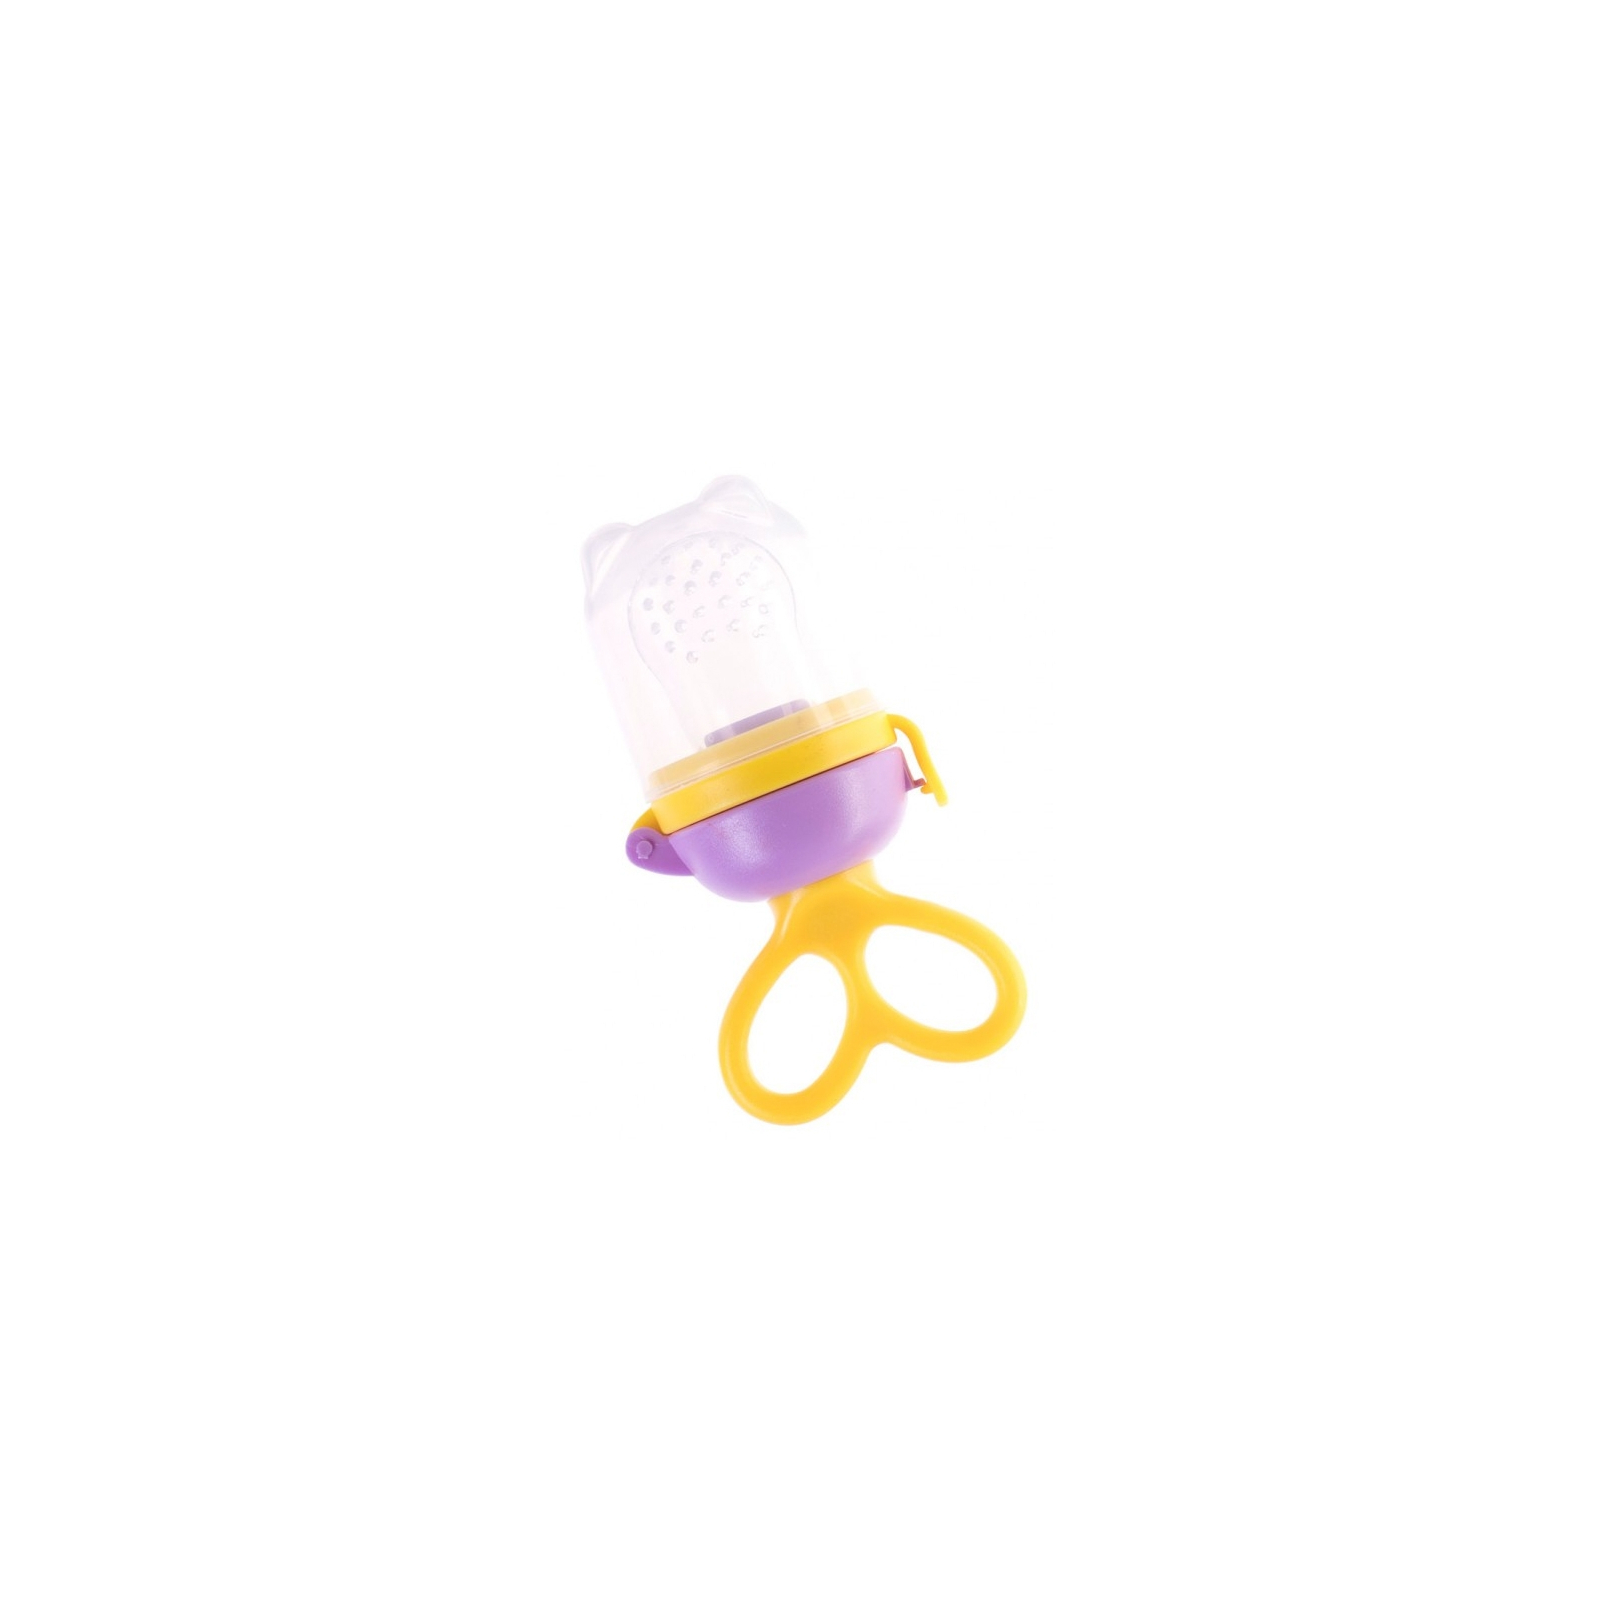 Ниблер Baby Team силиконовый Желто-фиолетовый (6203_желто-фиолет)